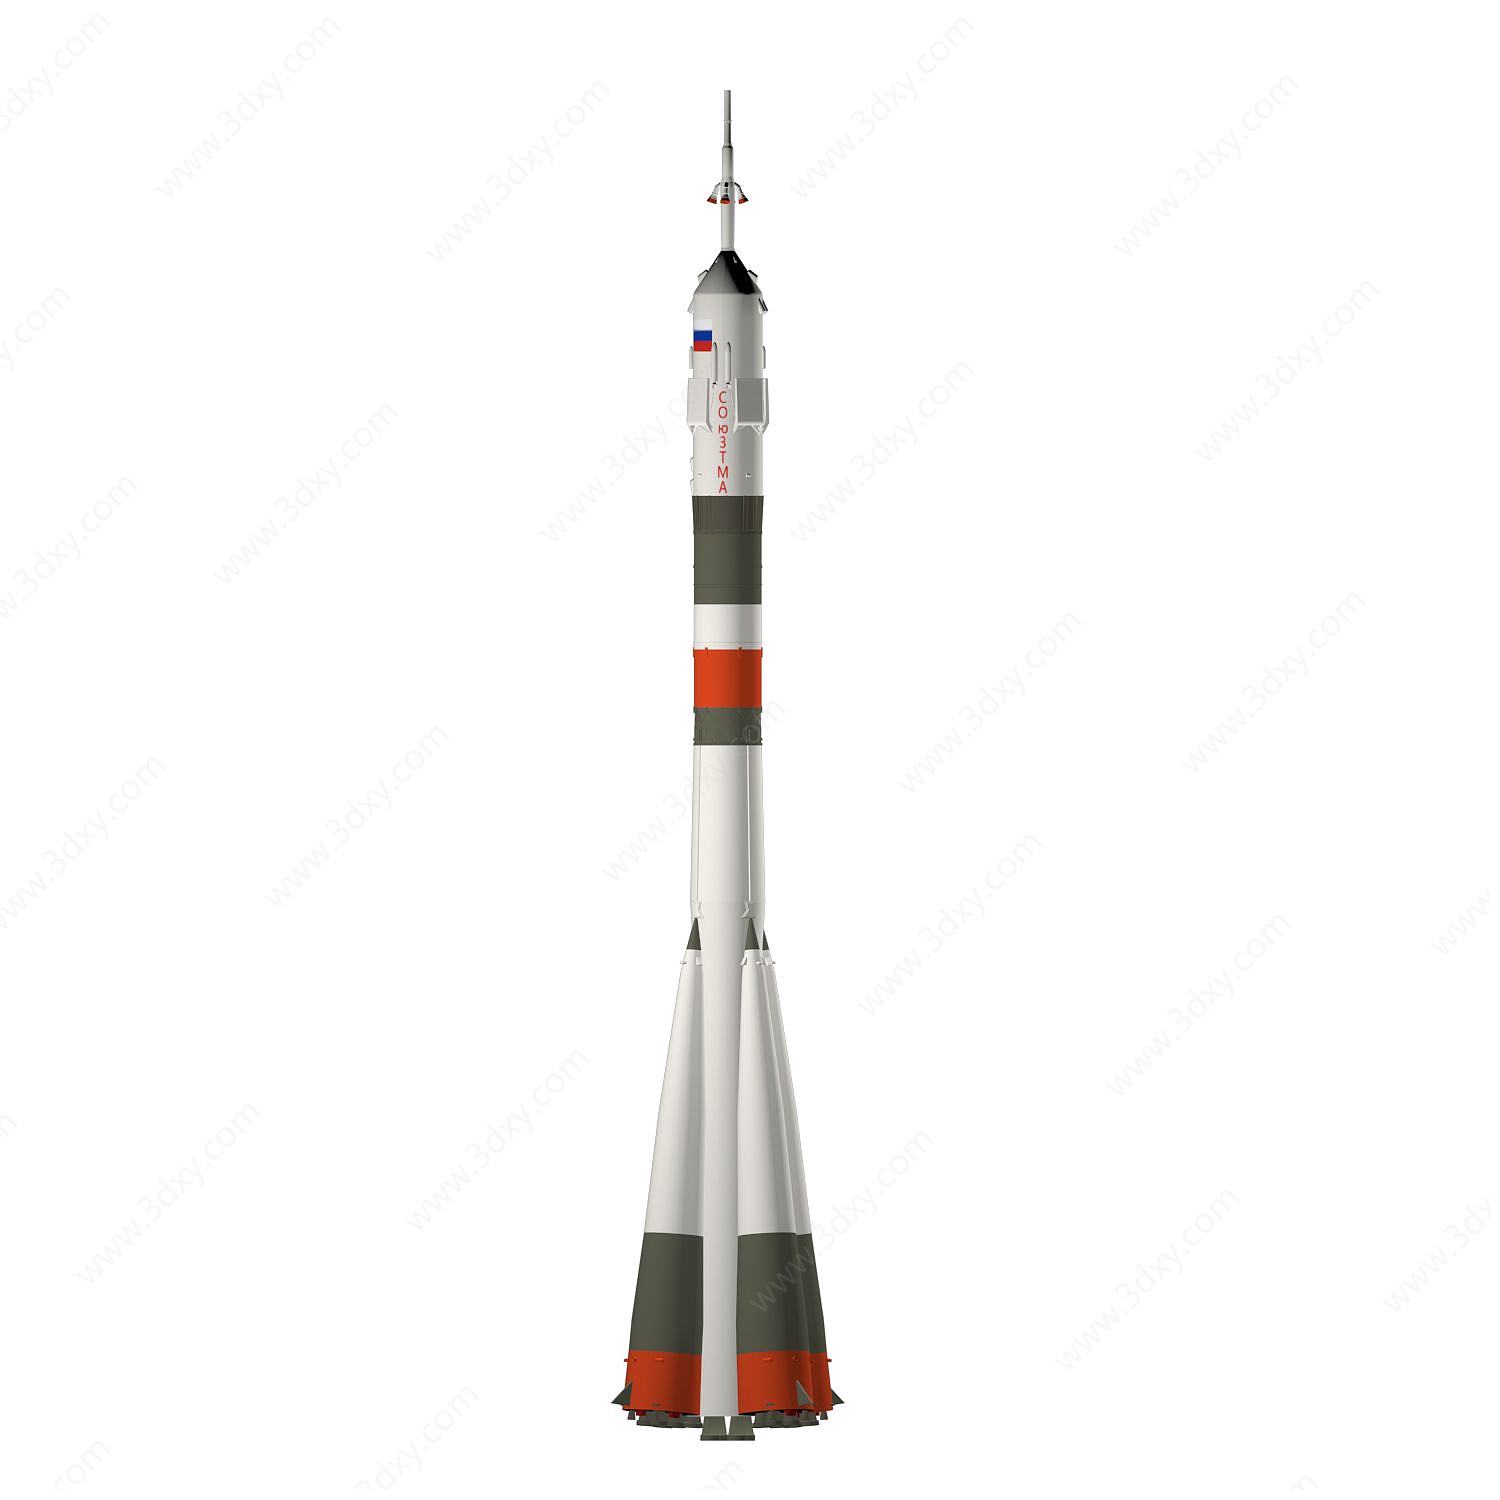 俄罗斯联盟号火箭3D模型